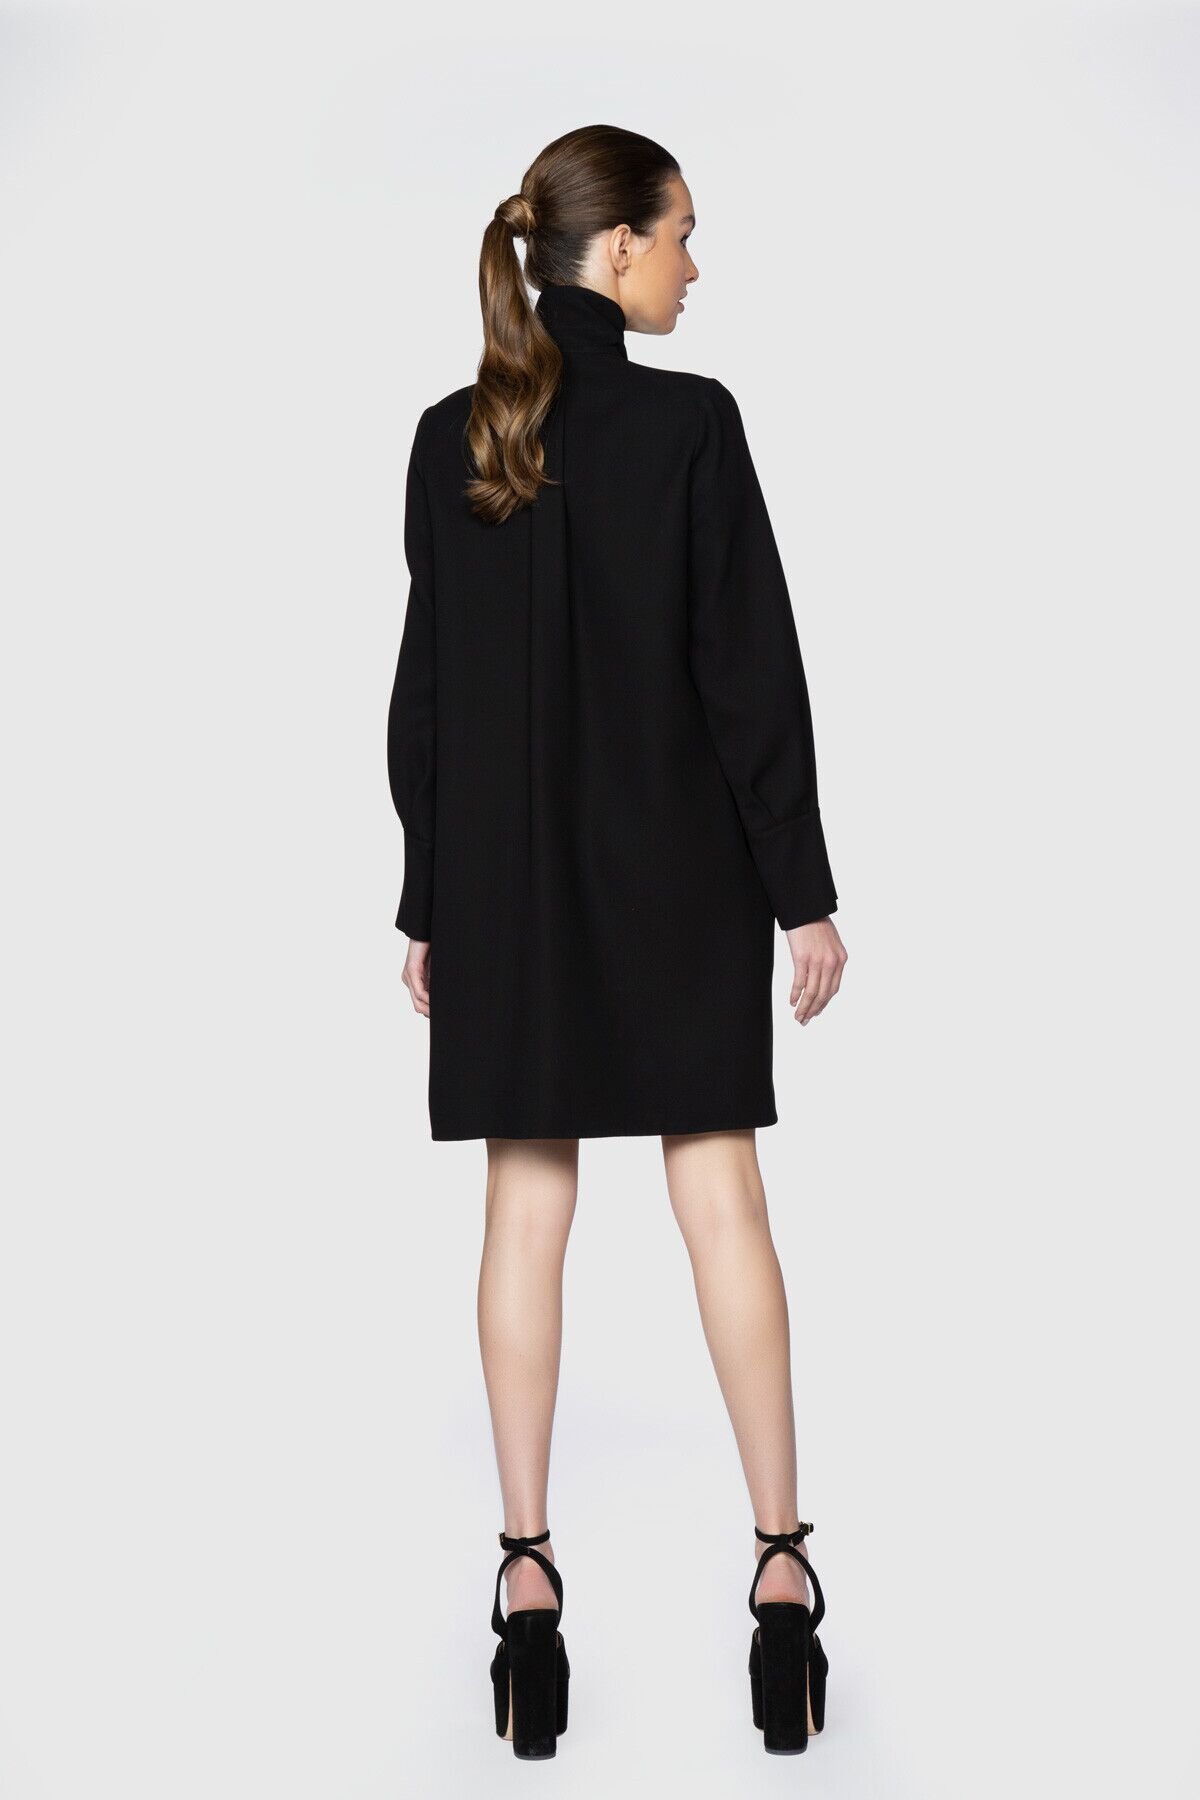 Dice Kayek İşlemeli Yırtmaç Kol Detaylı Diz Üstü Siyah Tasarım Elbise